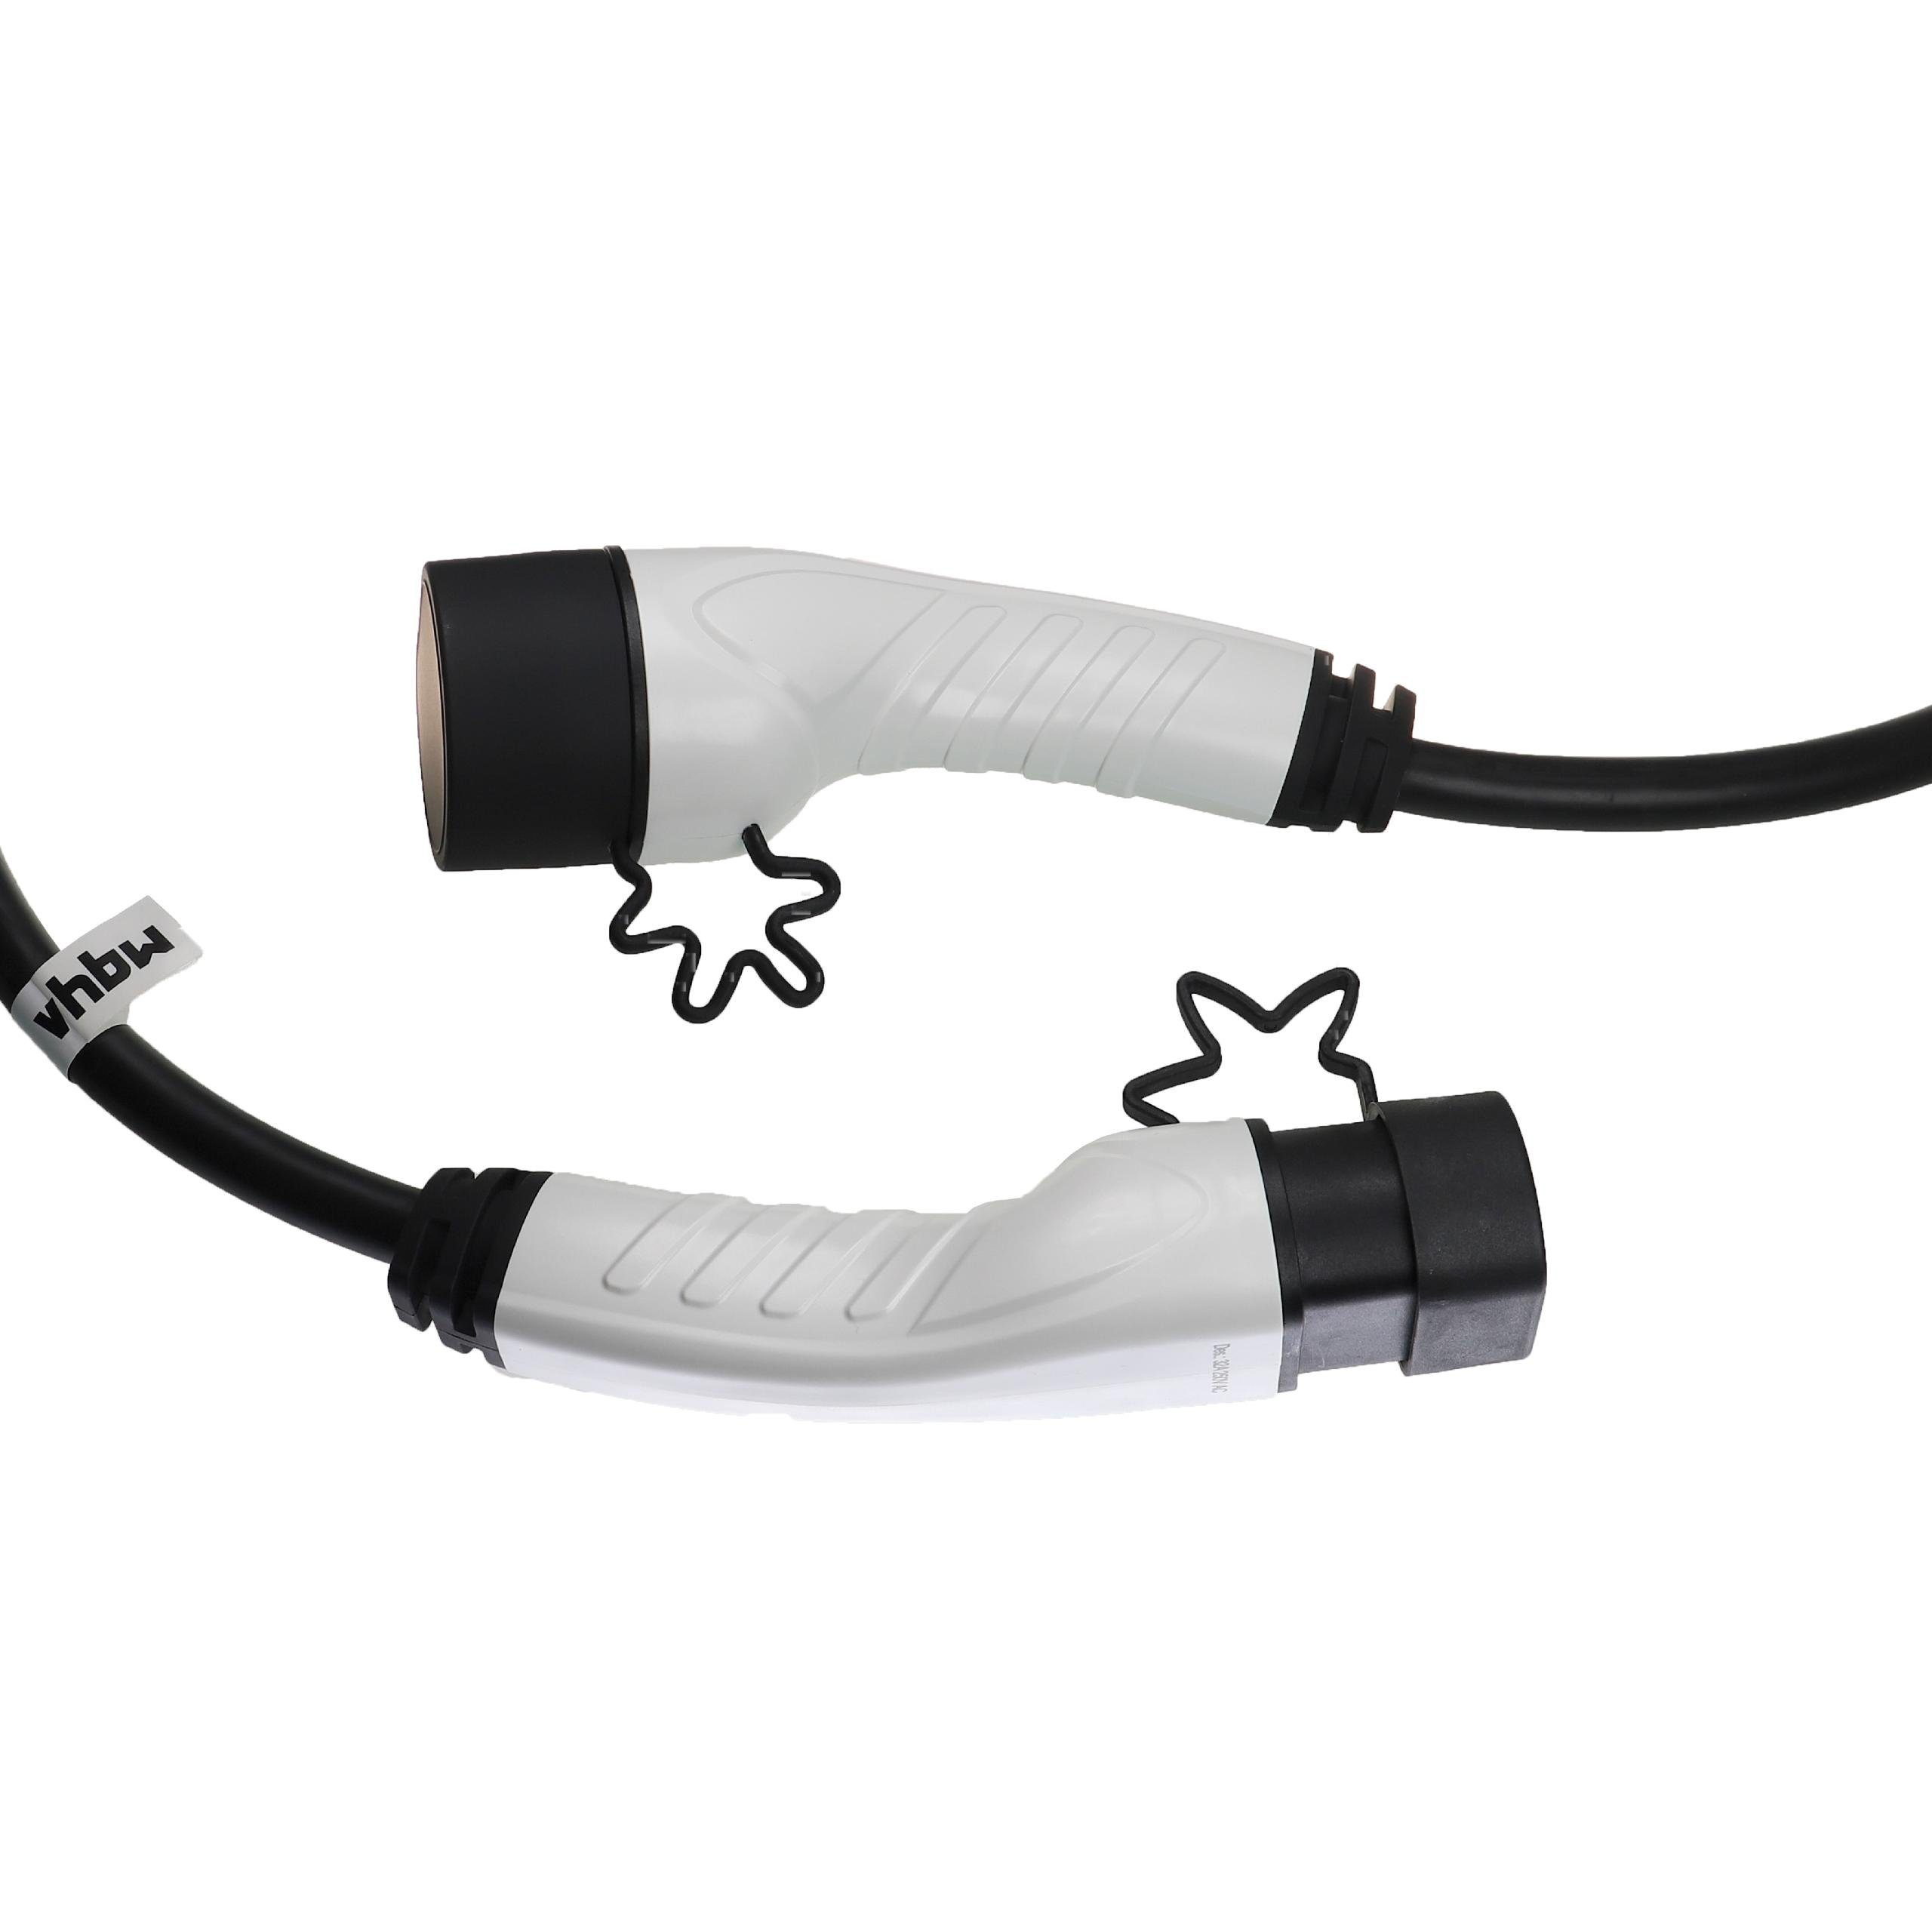 Kangoo passend Ladekabel E-Tech, für Elektro-Kabel Master vhbw E-Tech, Megane Renault